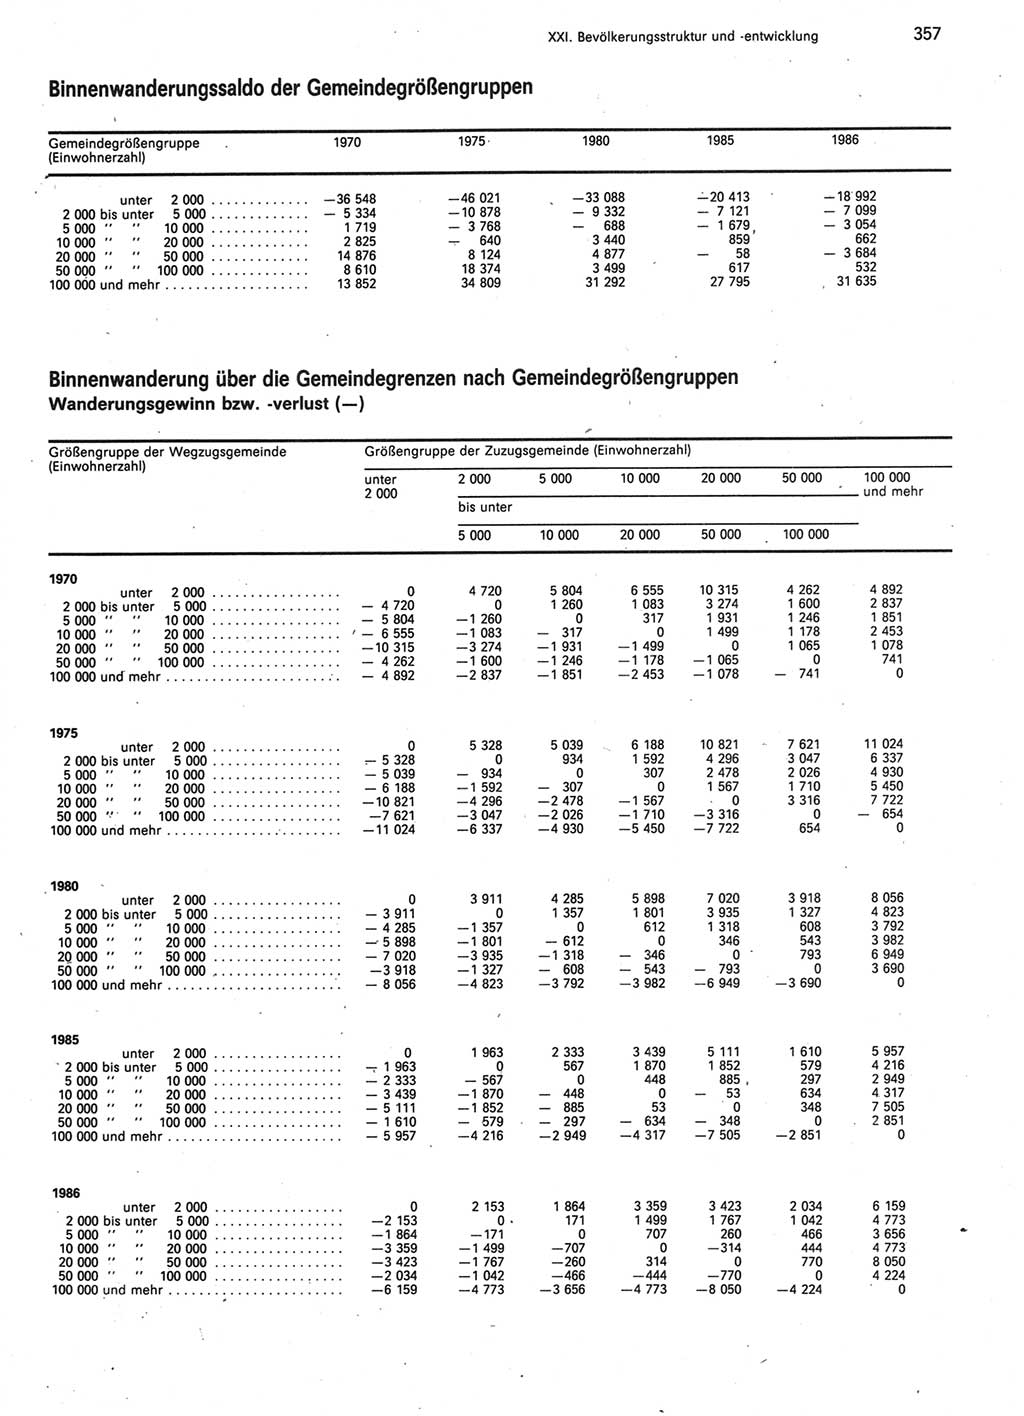 Statistisches Jahrbuch der Deutschen Demokratischen Republik (DDR) 1987, Seite 357 (Stat. Jb. DDR 1987, S. 357)